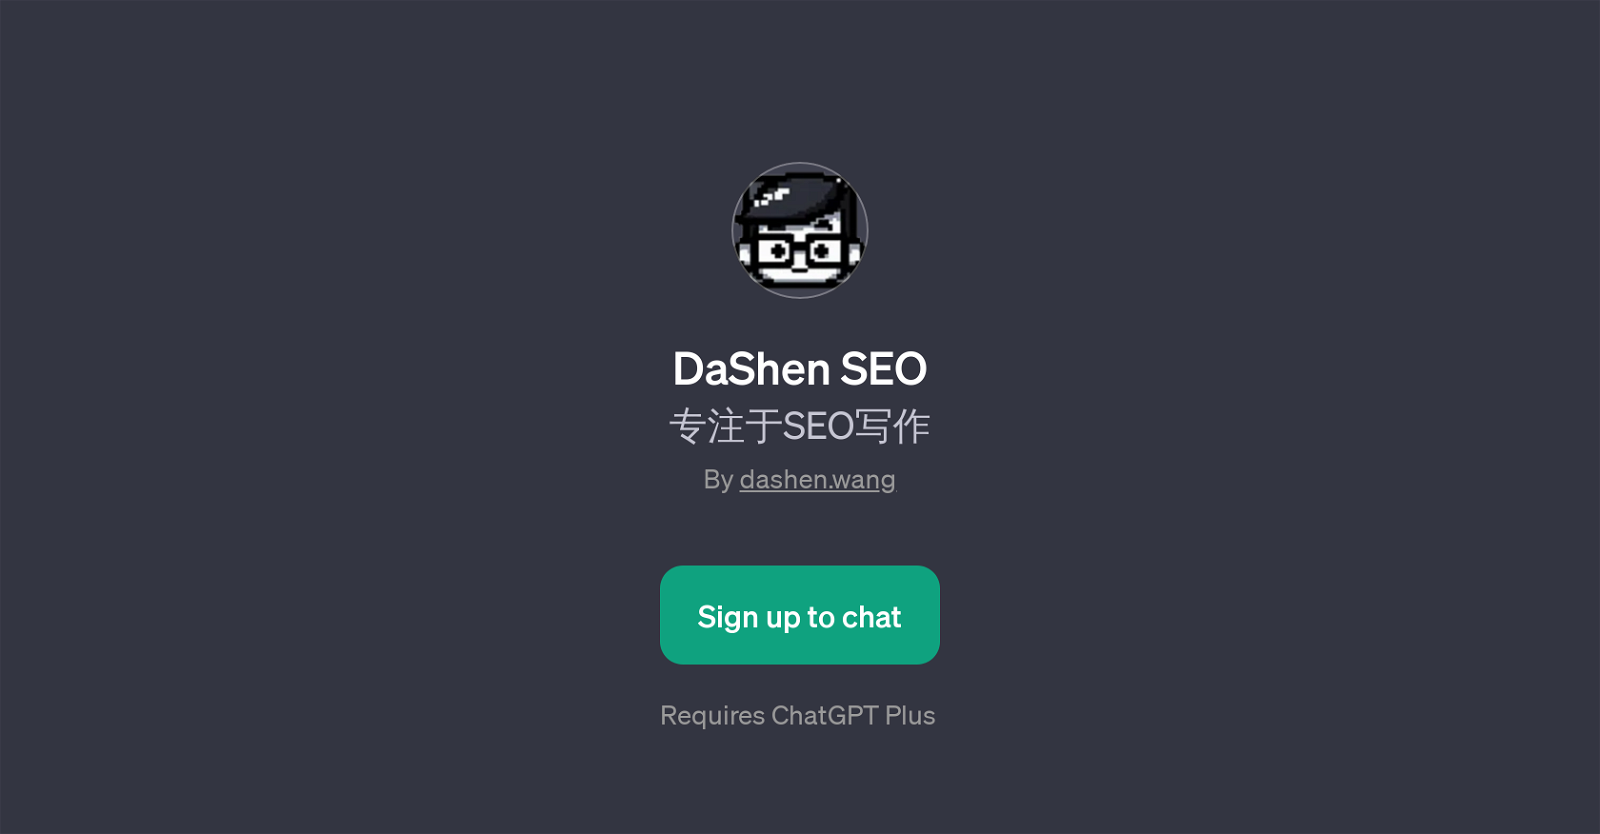 DaShen SEO website